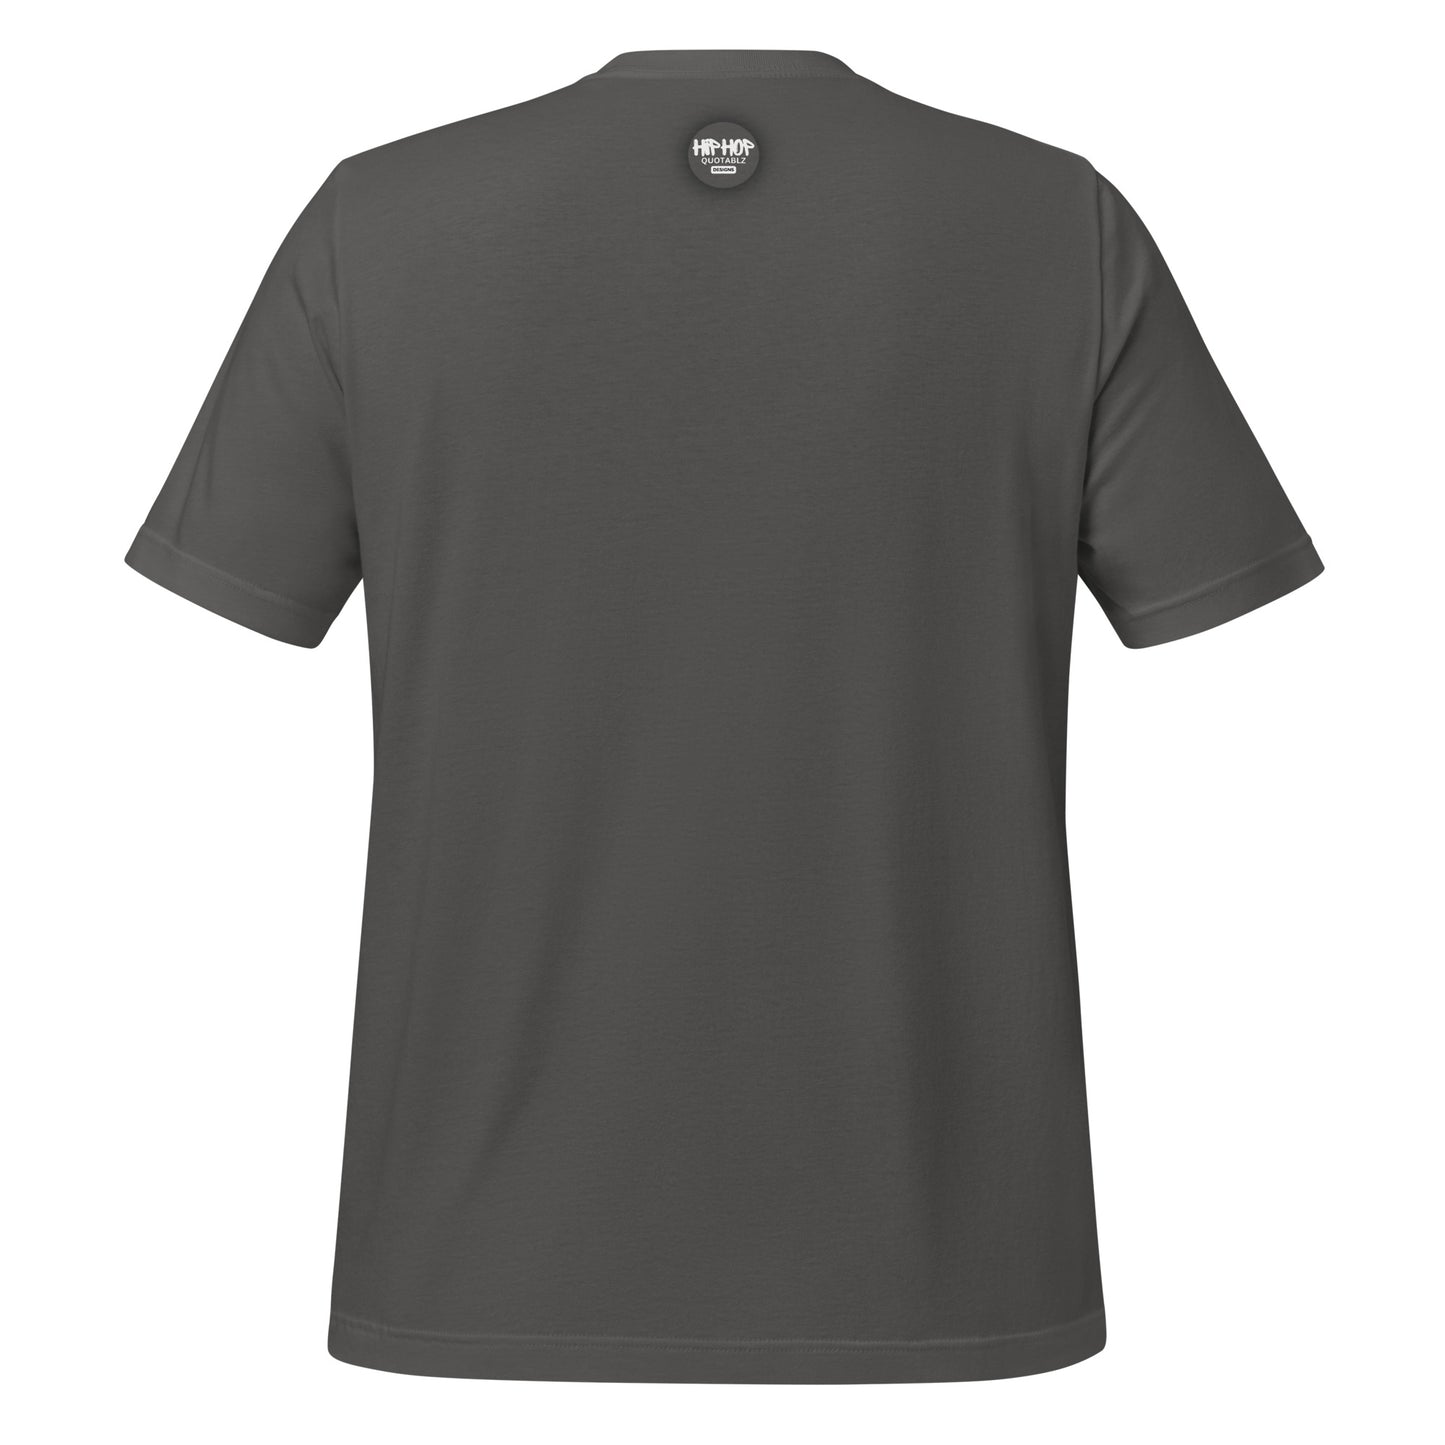 KATT for PREZ Unisex T-Shirt